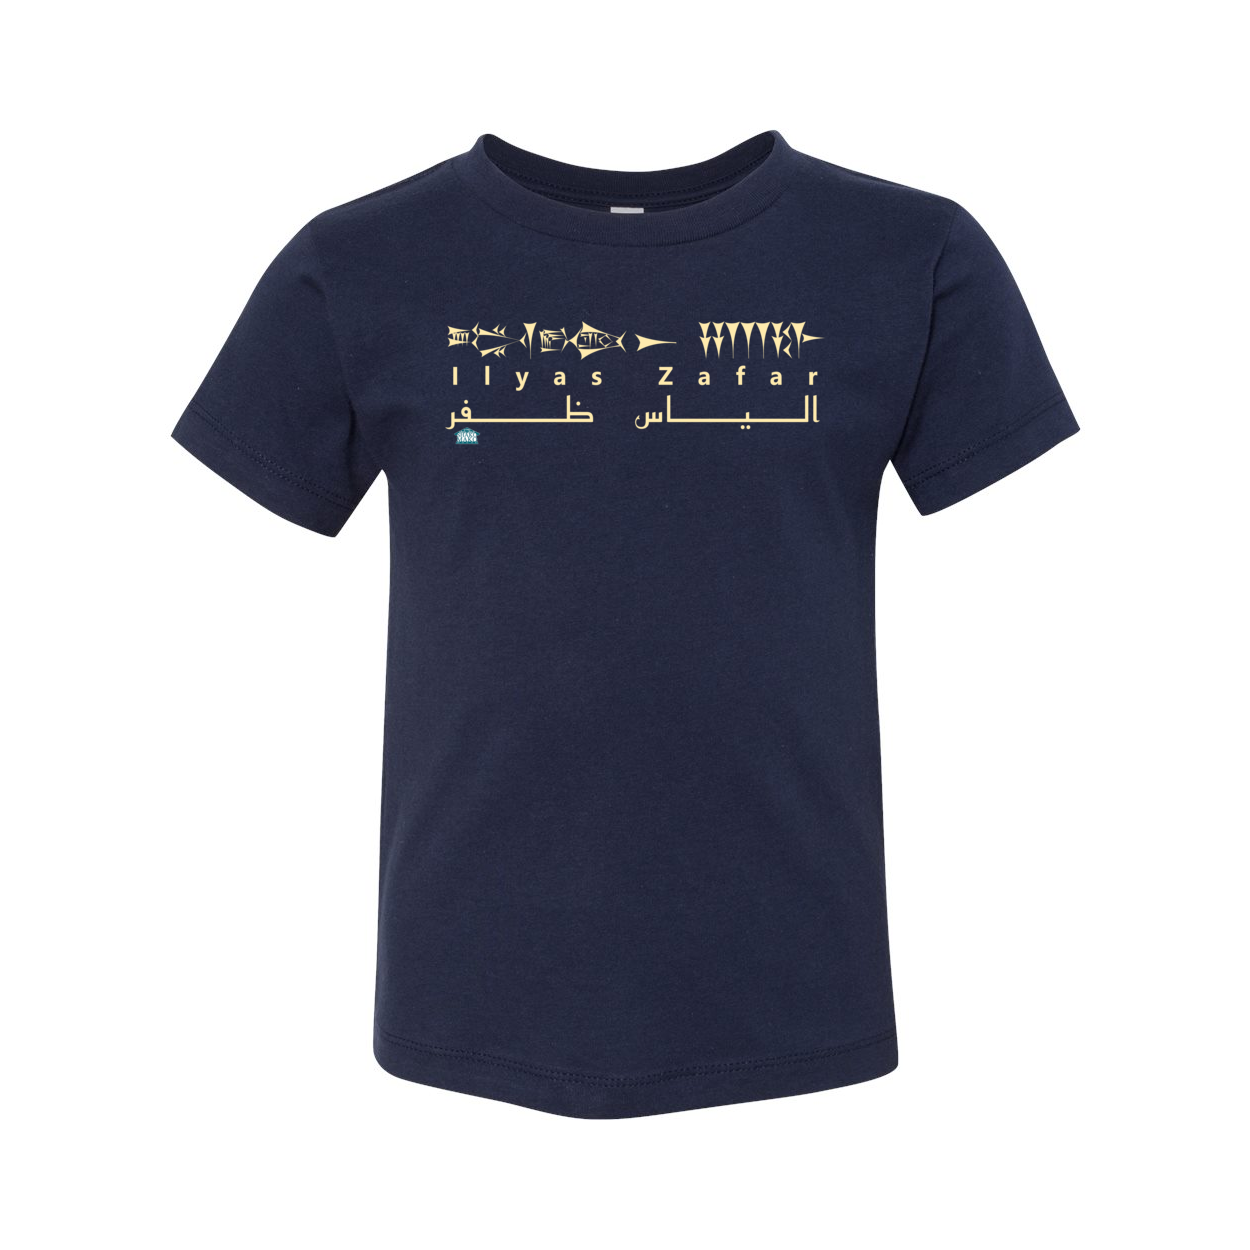 Cuneiform Ilyas Zafar Toddler T Shirt